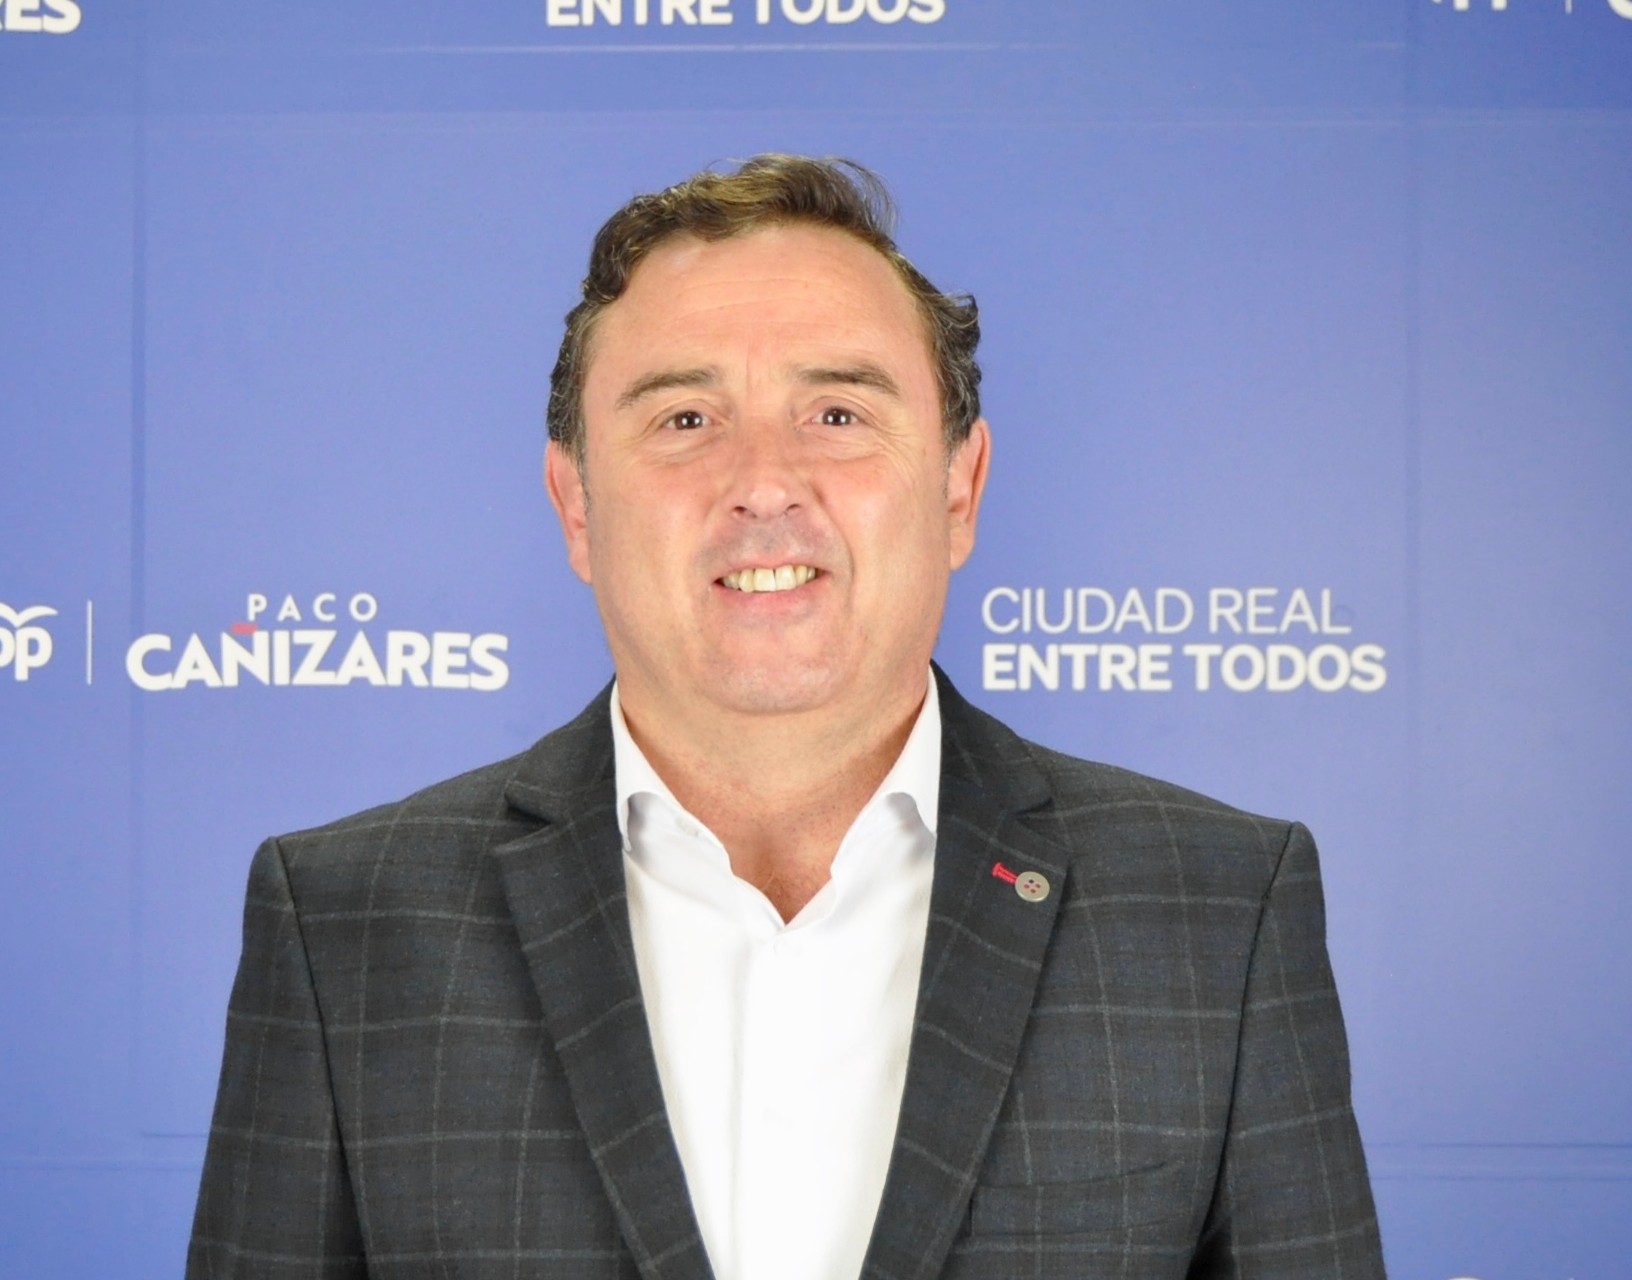 Gregorio Enrique Oraa Sanchez Cano